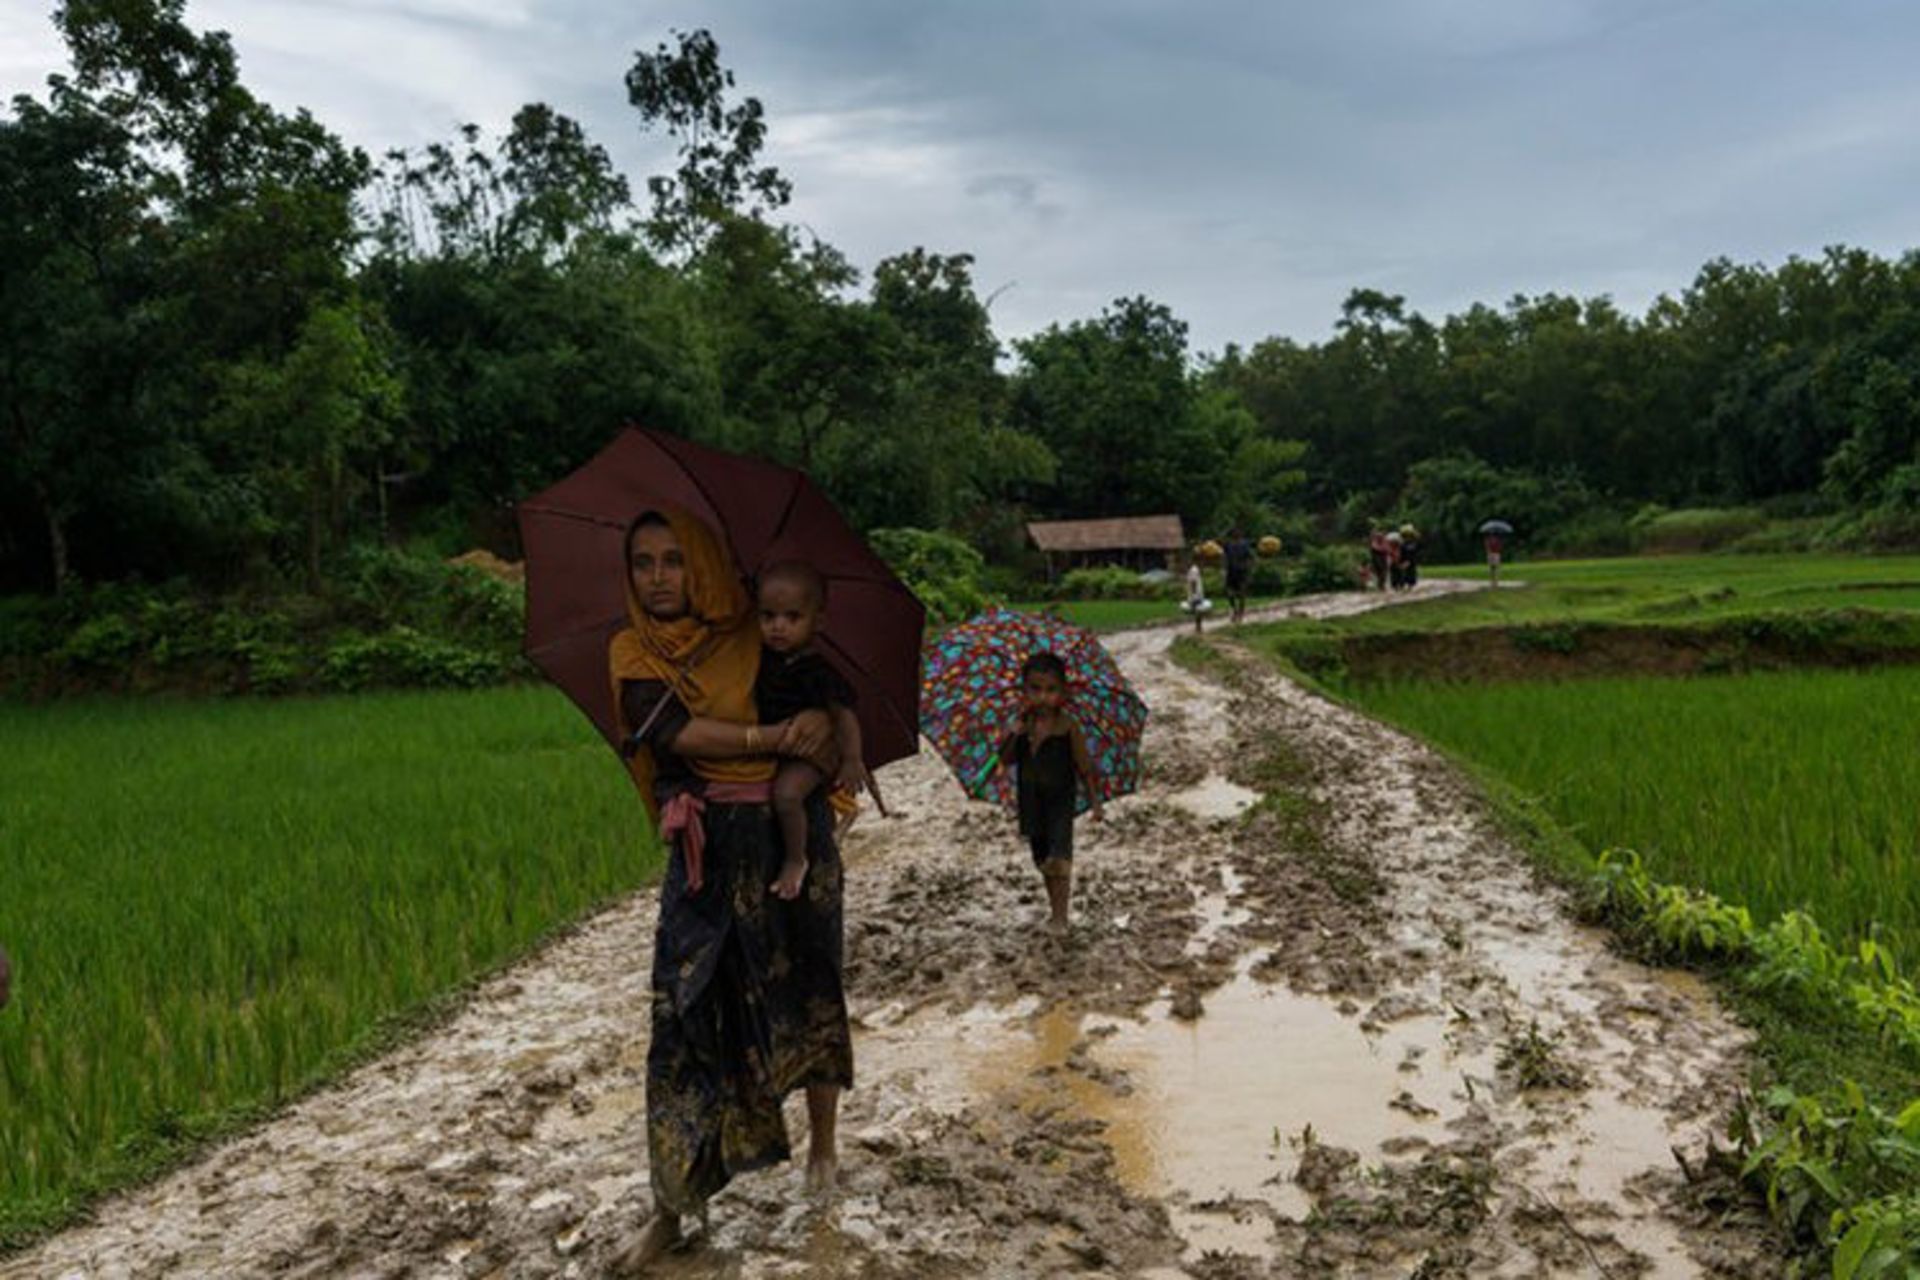 مرجع متخصصين ايران پناهجويان ميانمار / myanmar refugees